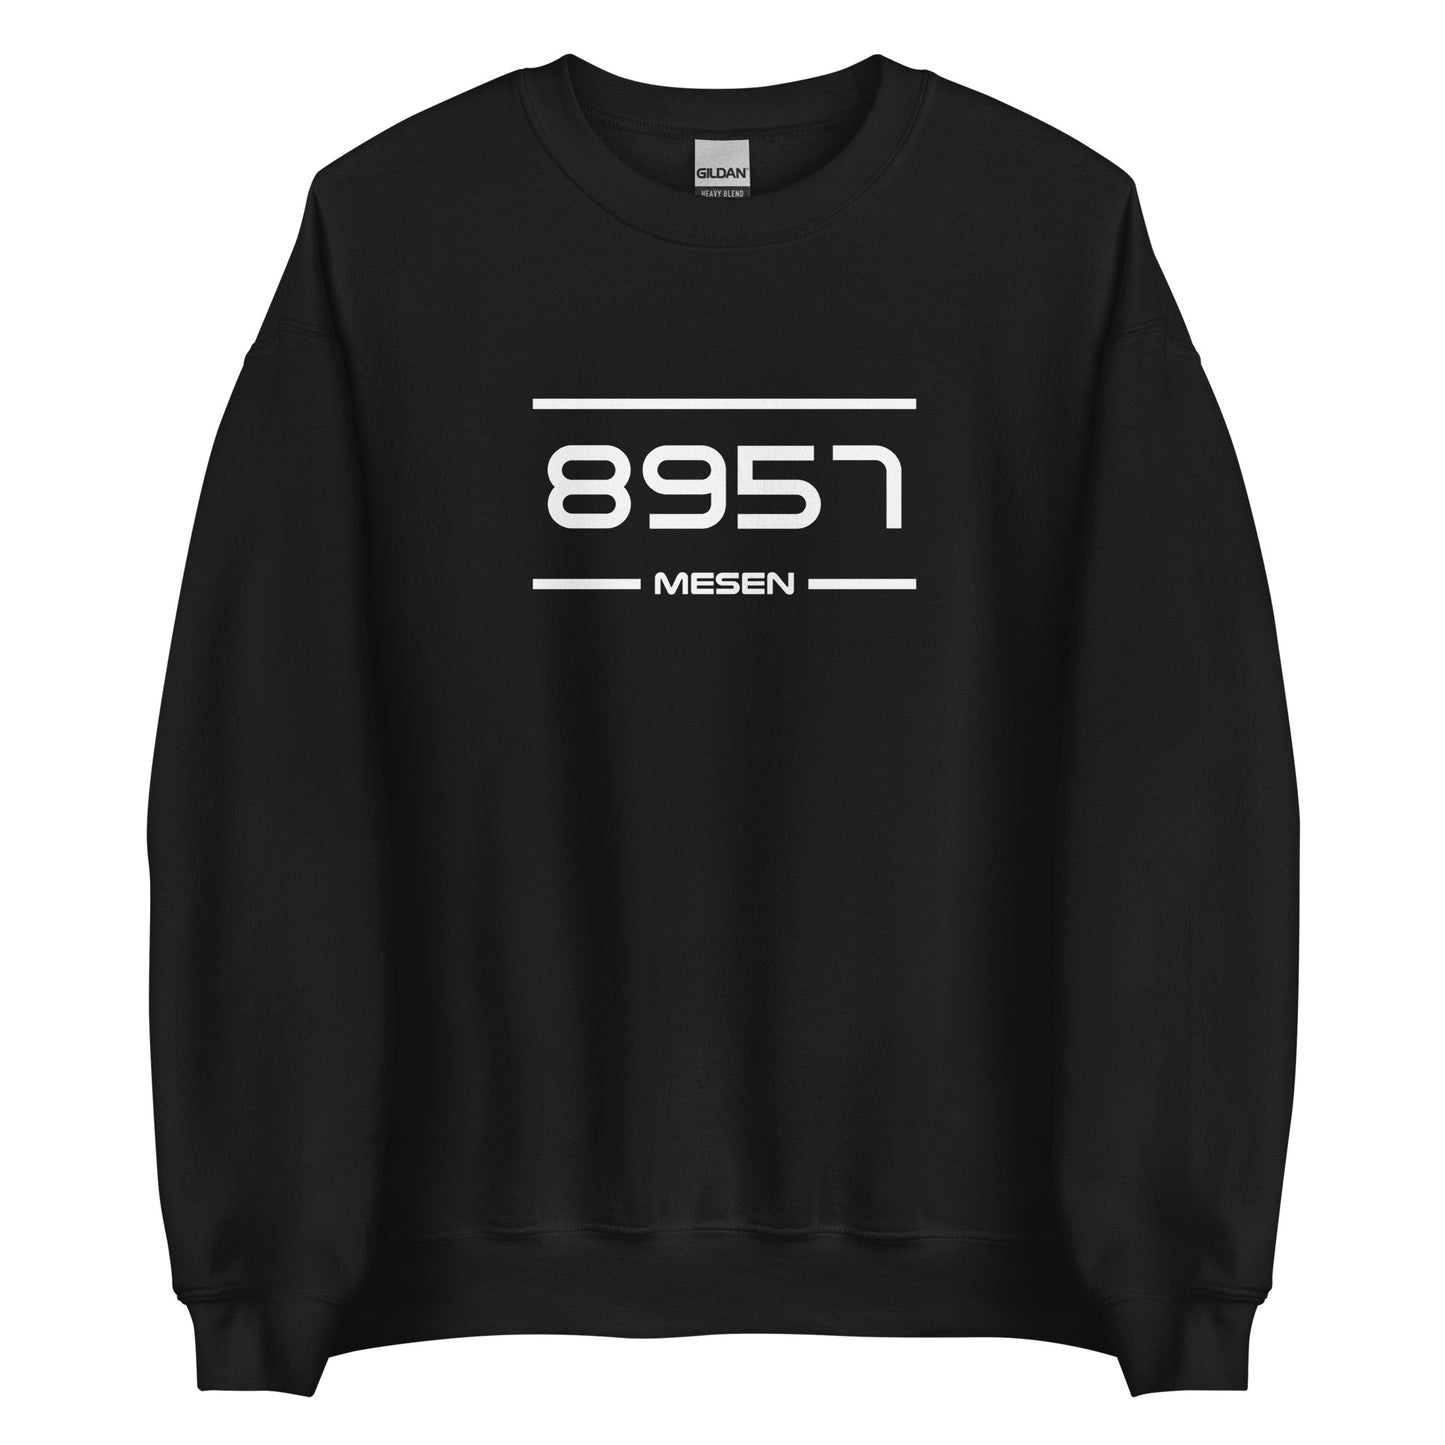 Sweater - 8957 - Mesen (M/V)